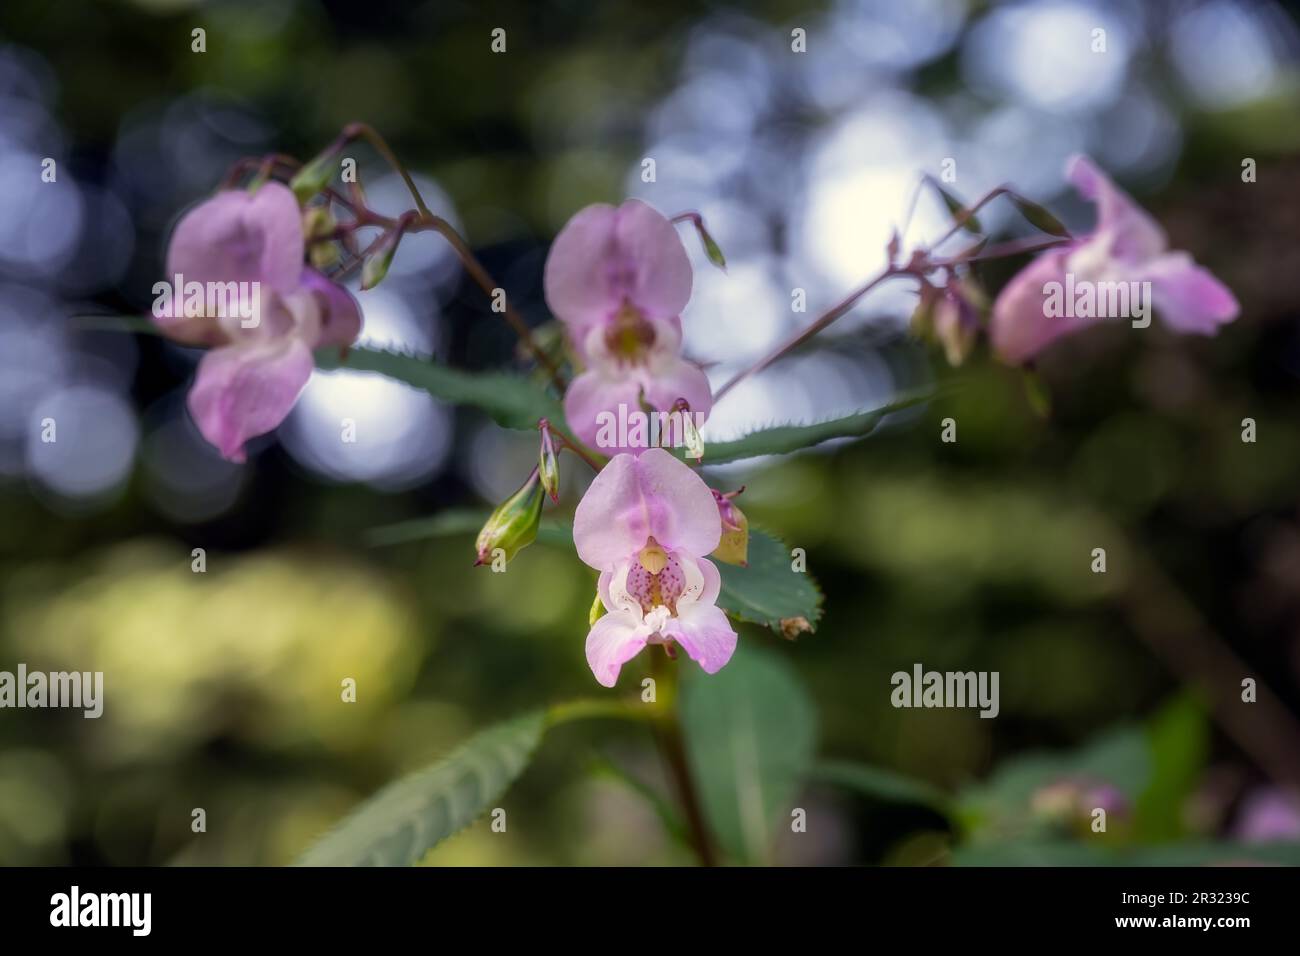 Impatiens glandulifera Royle o fiori di balsamo himalayani, una specie invasiva in Inghilterra Foto Stock